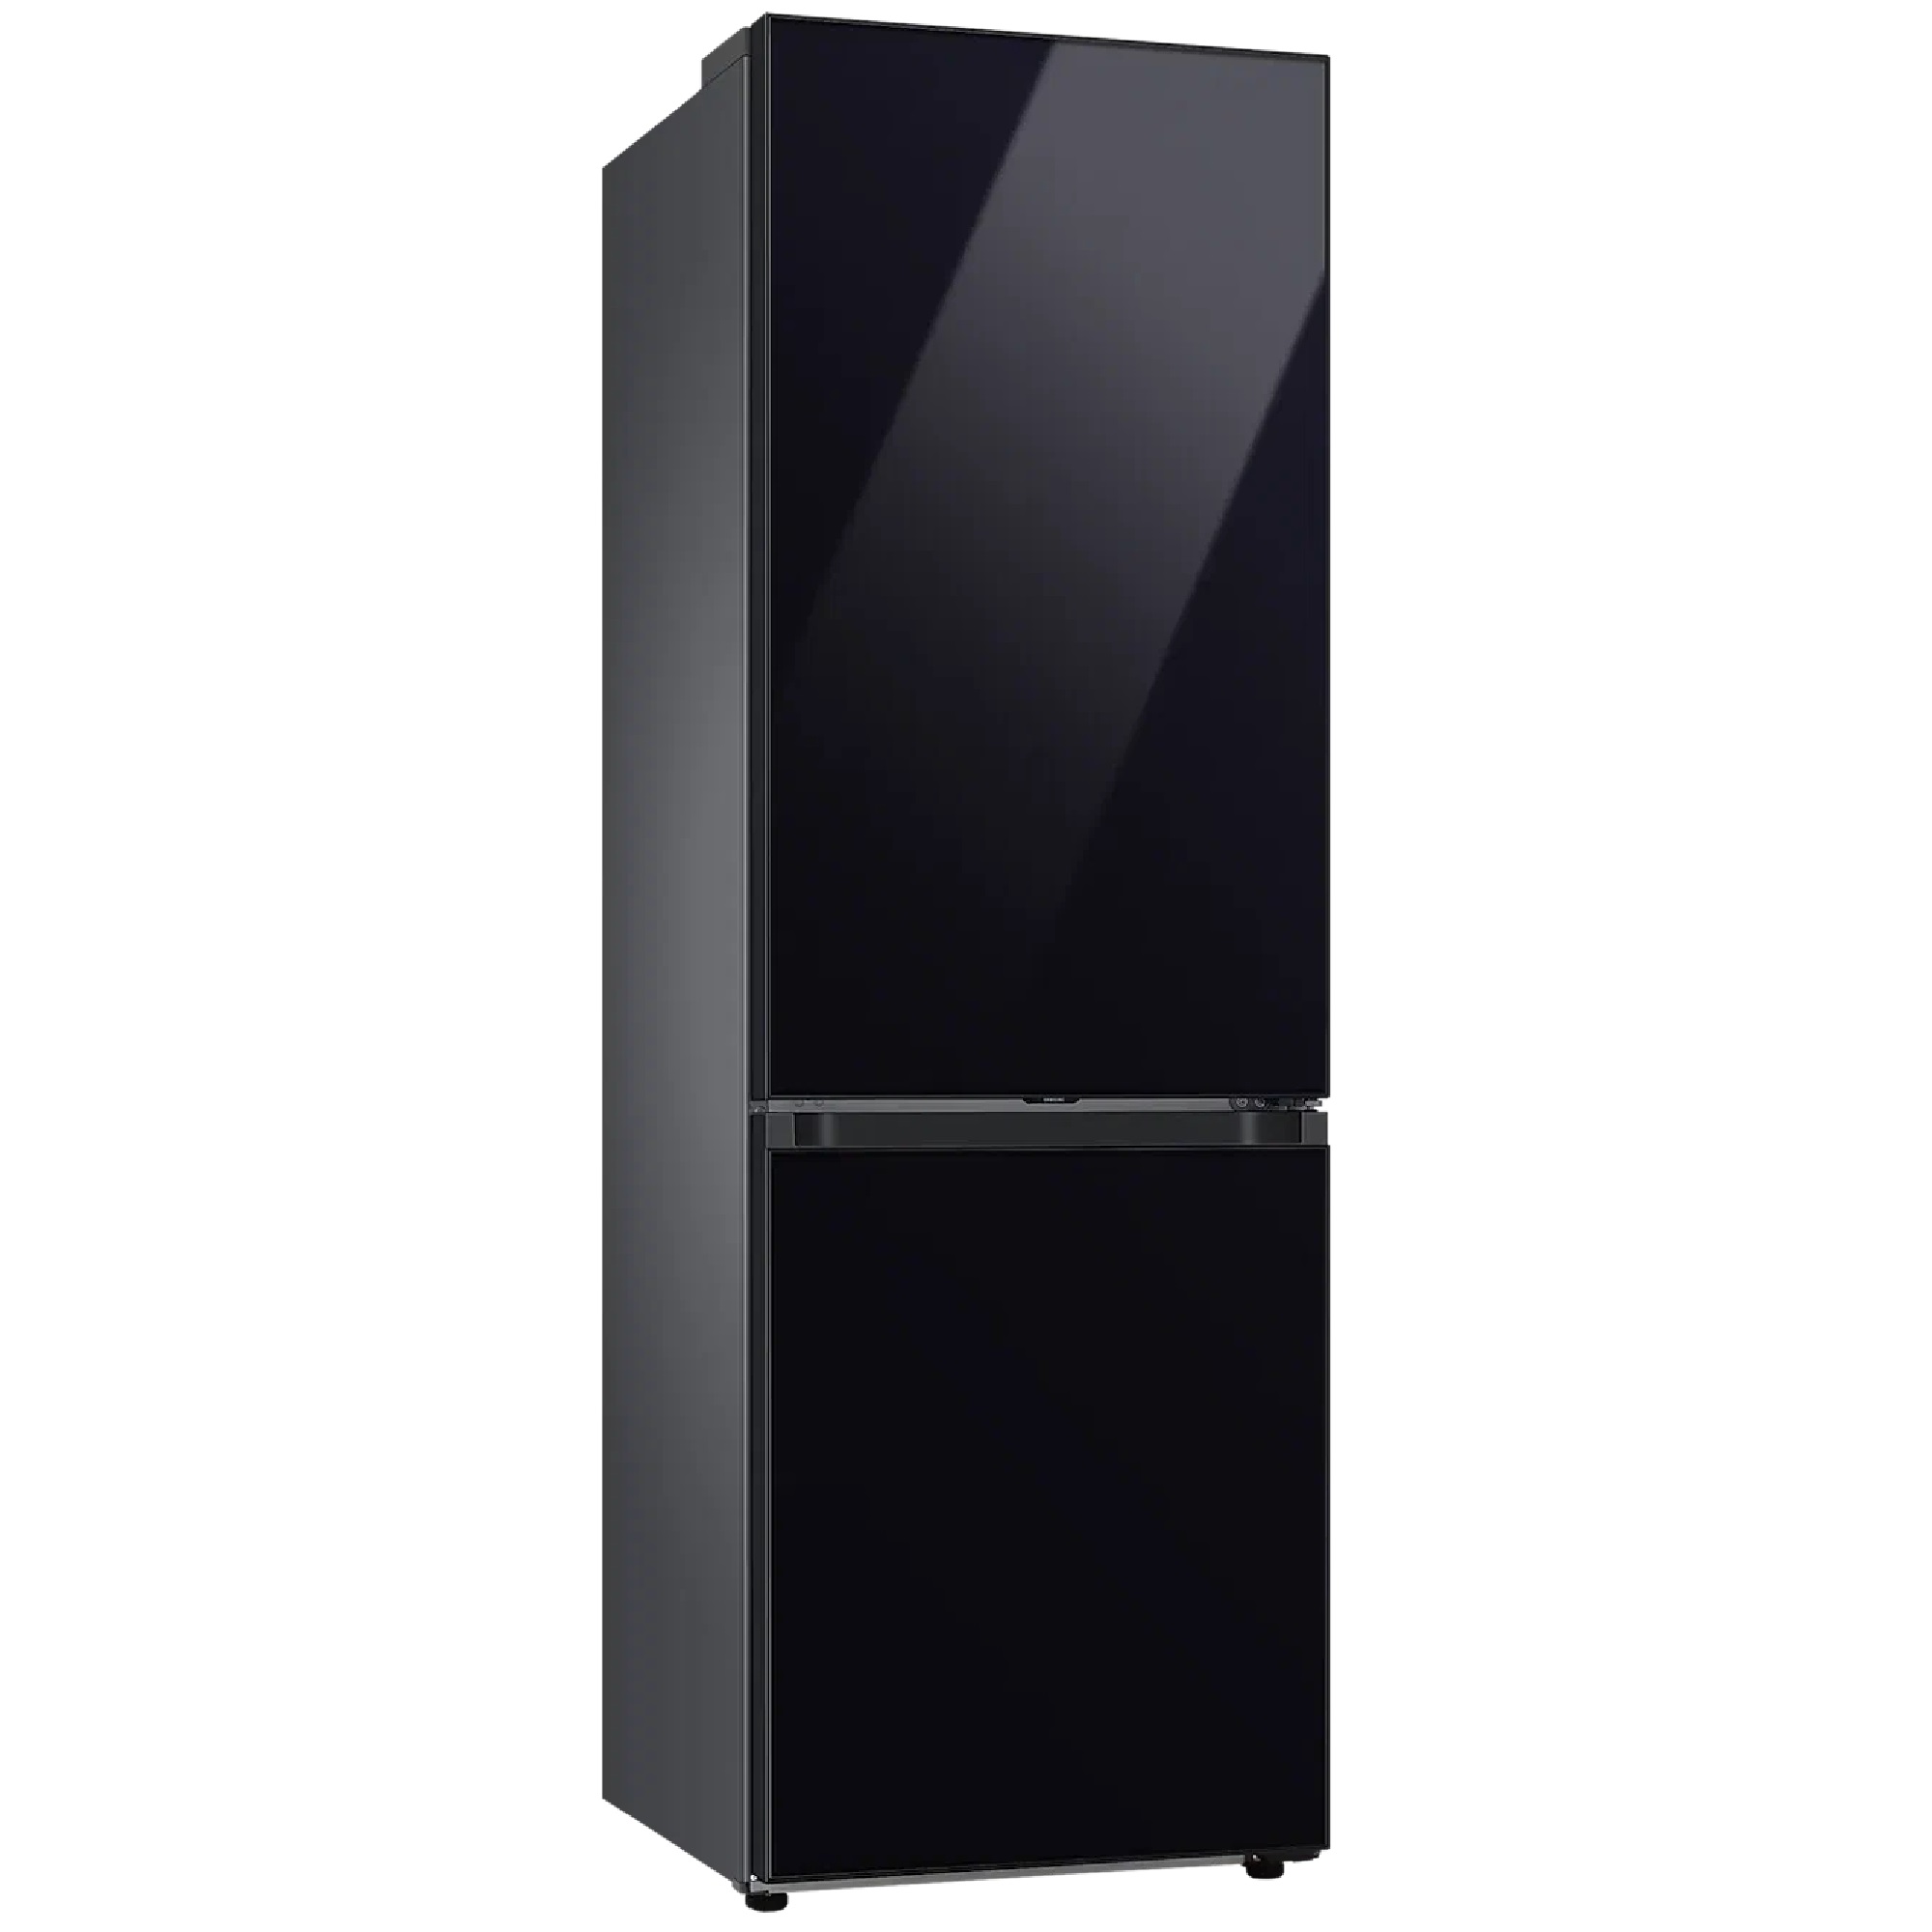 Холодильник с морозильником Samsung bespoke rb34a7b4f22/WT черный. Samsung bespoke rb38a7b6222. Холодильник Samsung bespoke rb34a7b4fap. Samsung rb38a7b6235 холодильник bespok. Холодильник черный с морозильником